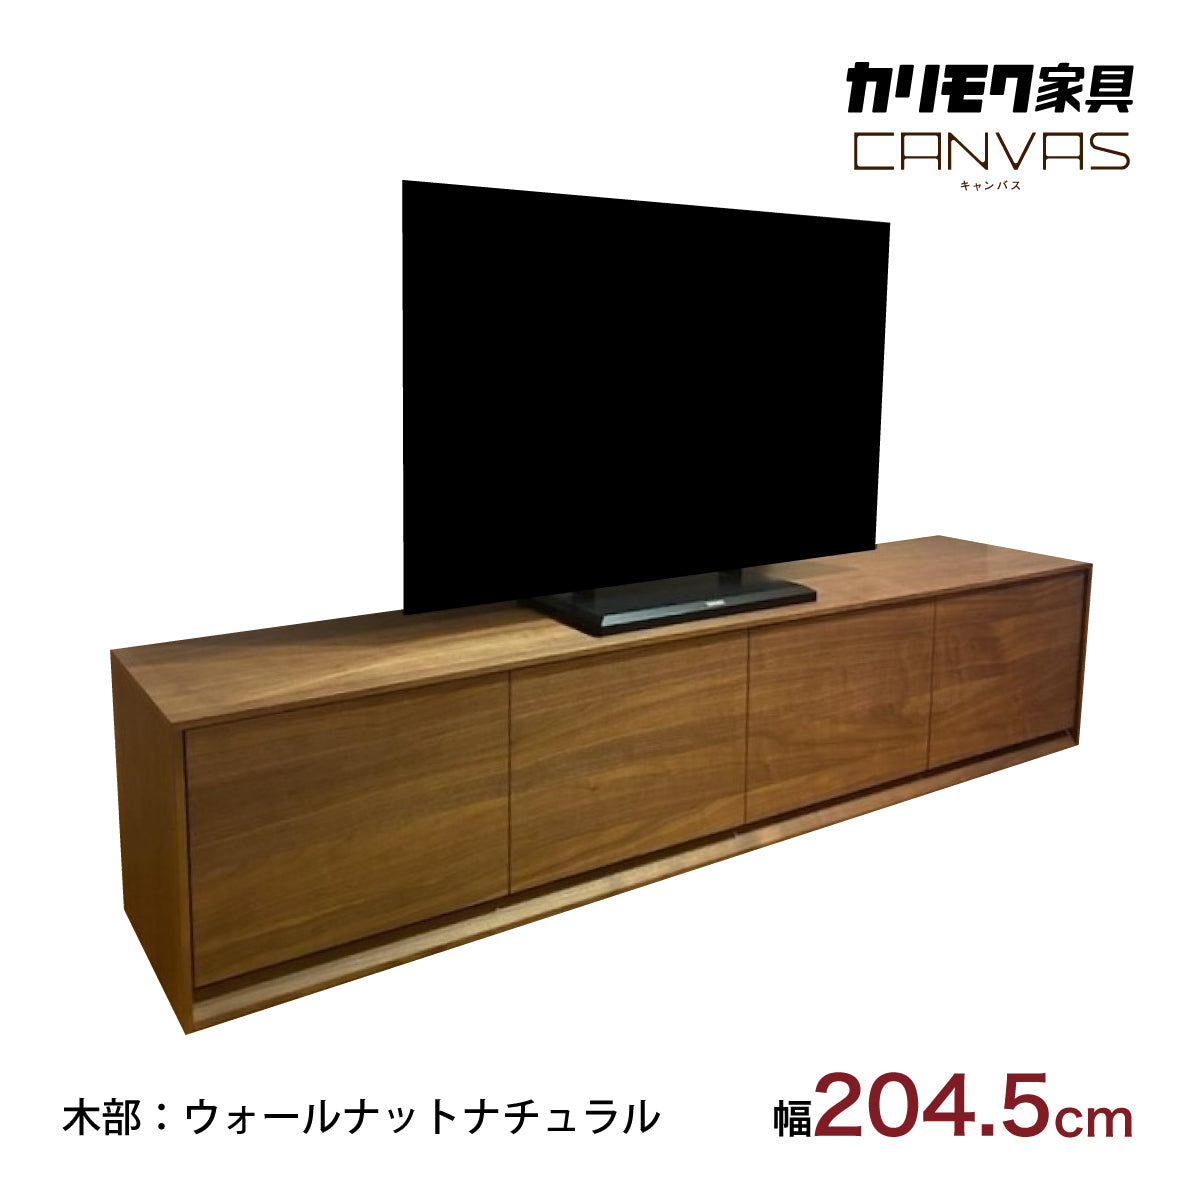 ☆カリモク TVボード CANVES キャンバス QW7057XR ウォールナット材 幅 